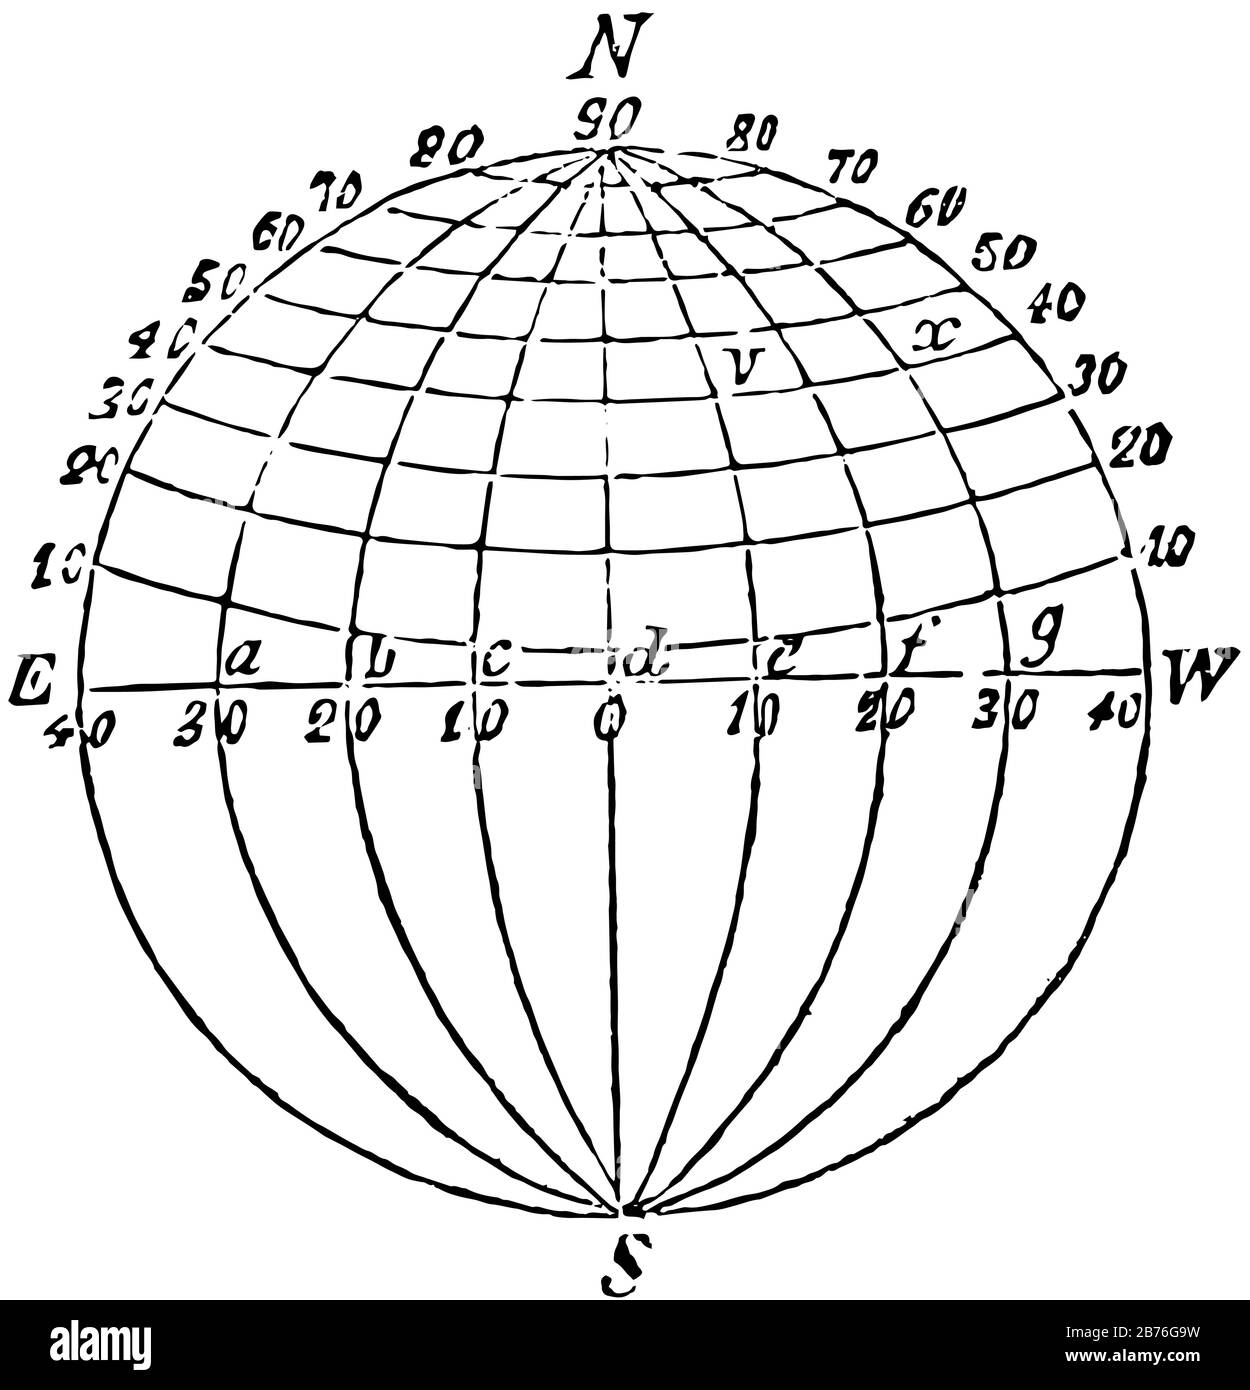 La longitudine è coordinata geografica per specificare la posizione nord, sud, est, ovest sulla superficie terrestre, il disegno a linee d'annata o l'illustrazione dell'incisione. Illustrazione Vettoriale